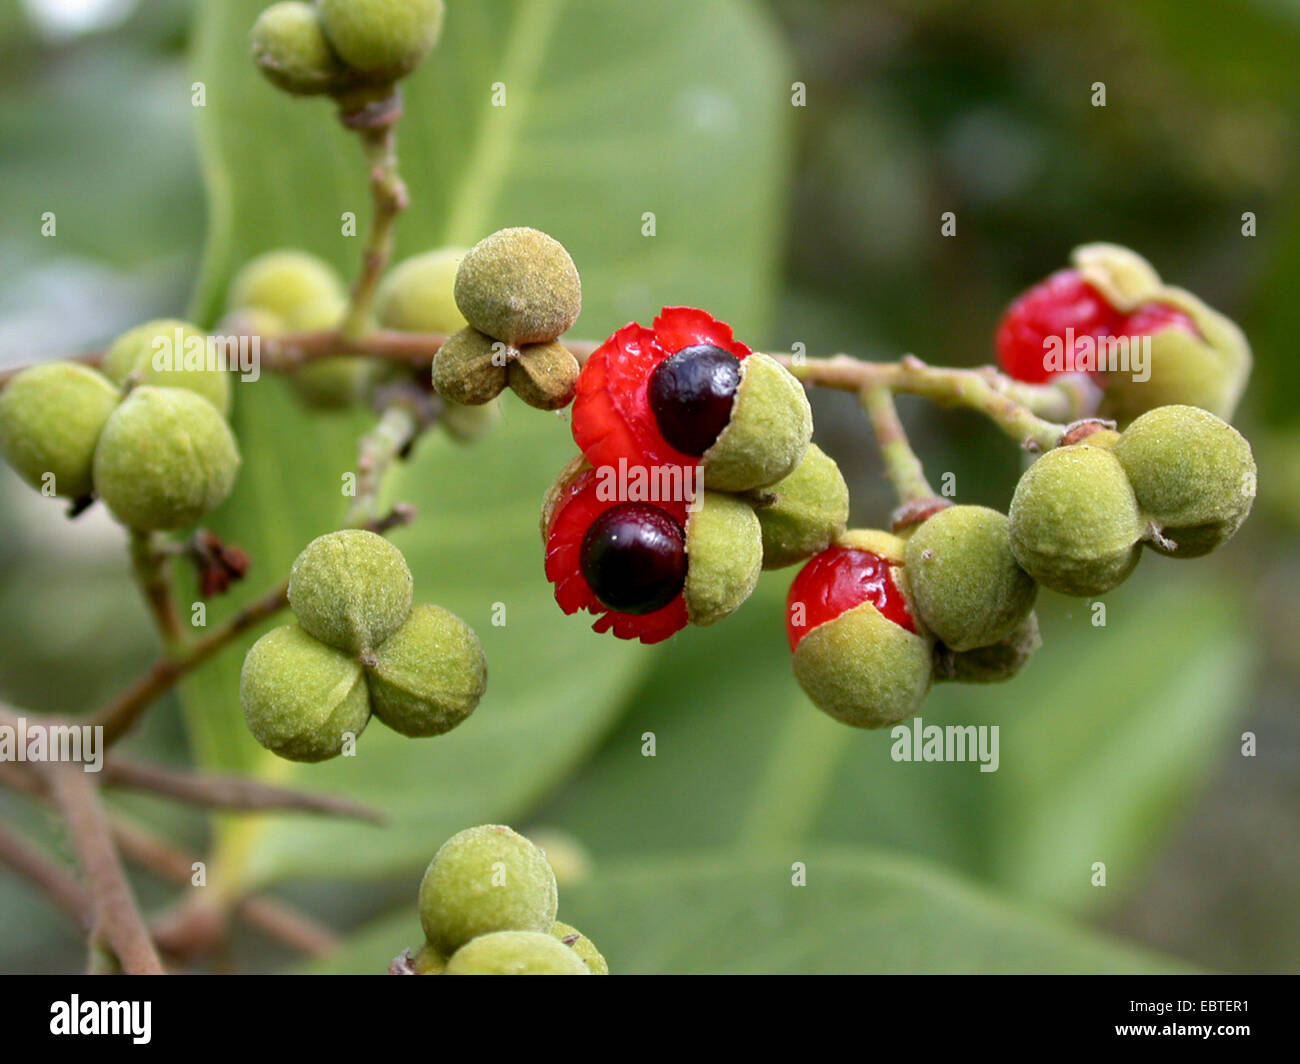 Alectryon subcinereus, Cupania subcineria, Nephelium leiocarpum (Nephelium leiocarpum), fruits Stock Photo